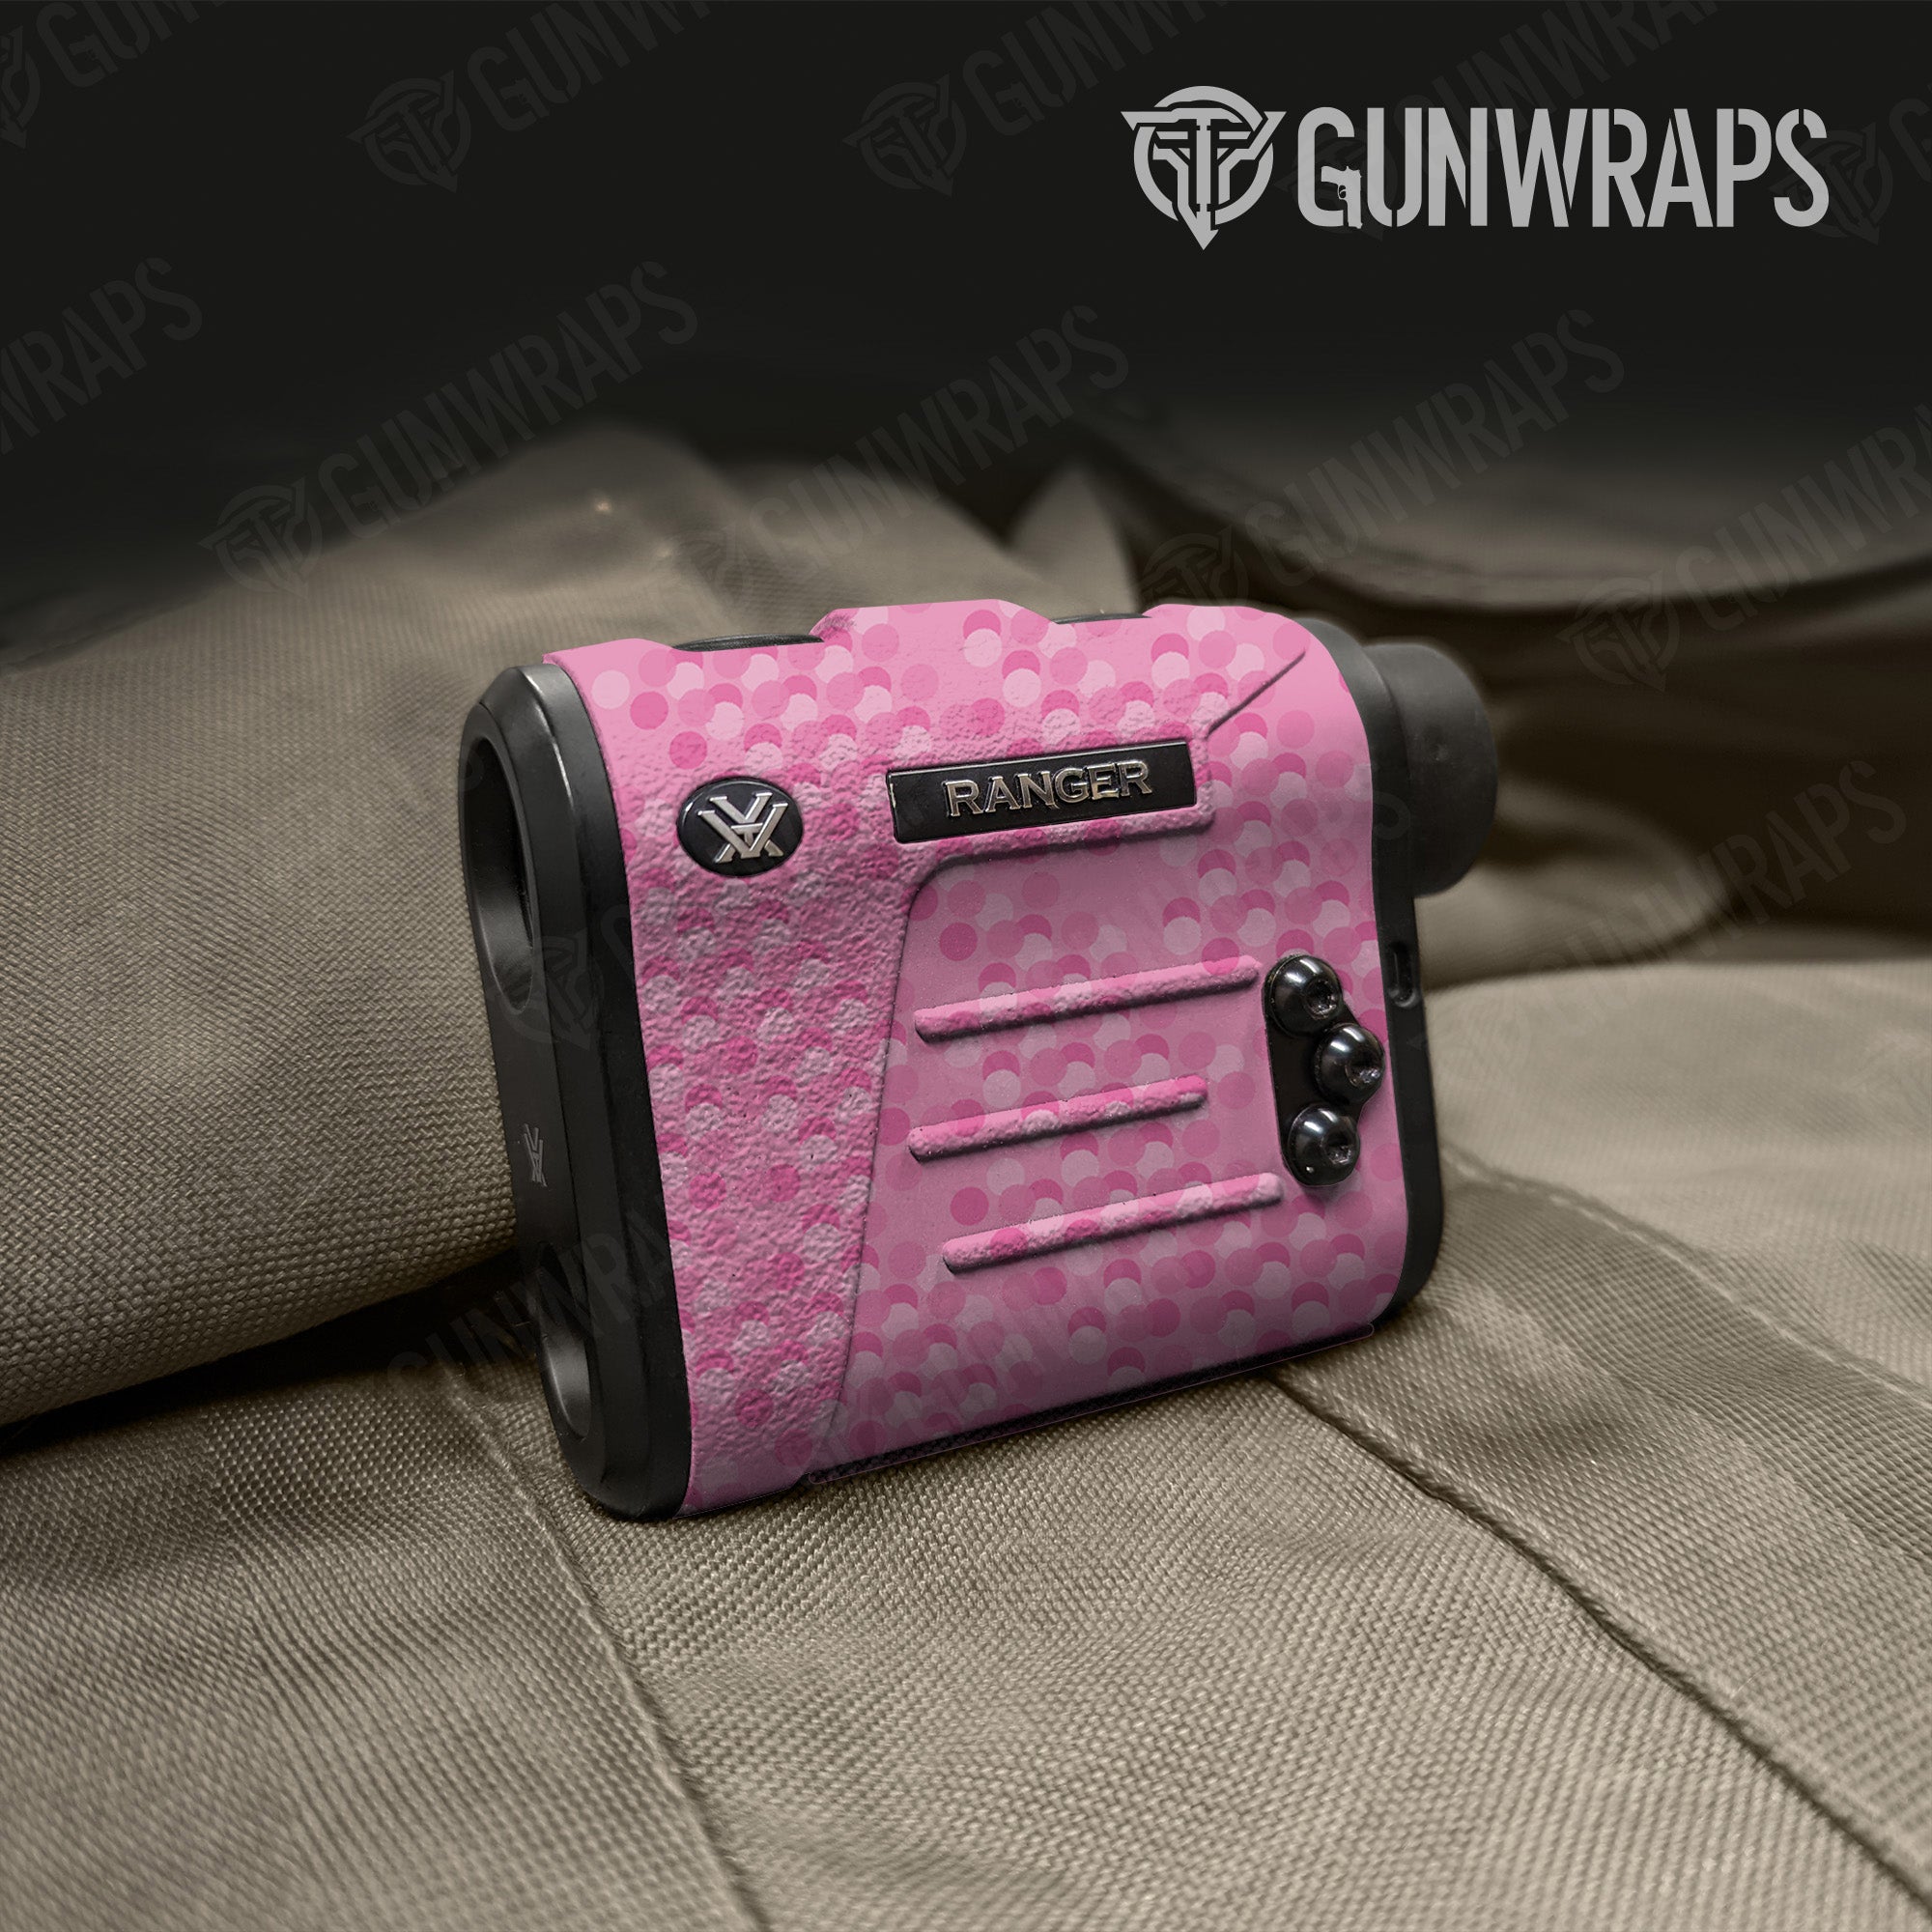 Rangefinder Eclipse Camo Elite Pink Gun Skin Vinyl Wrap